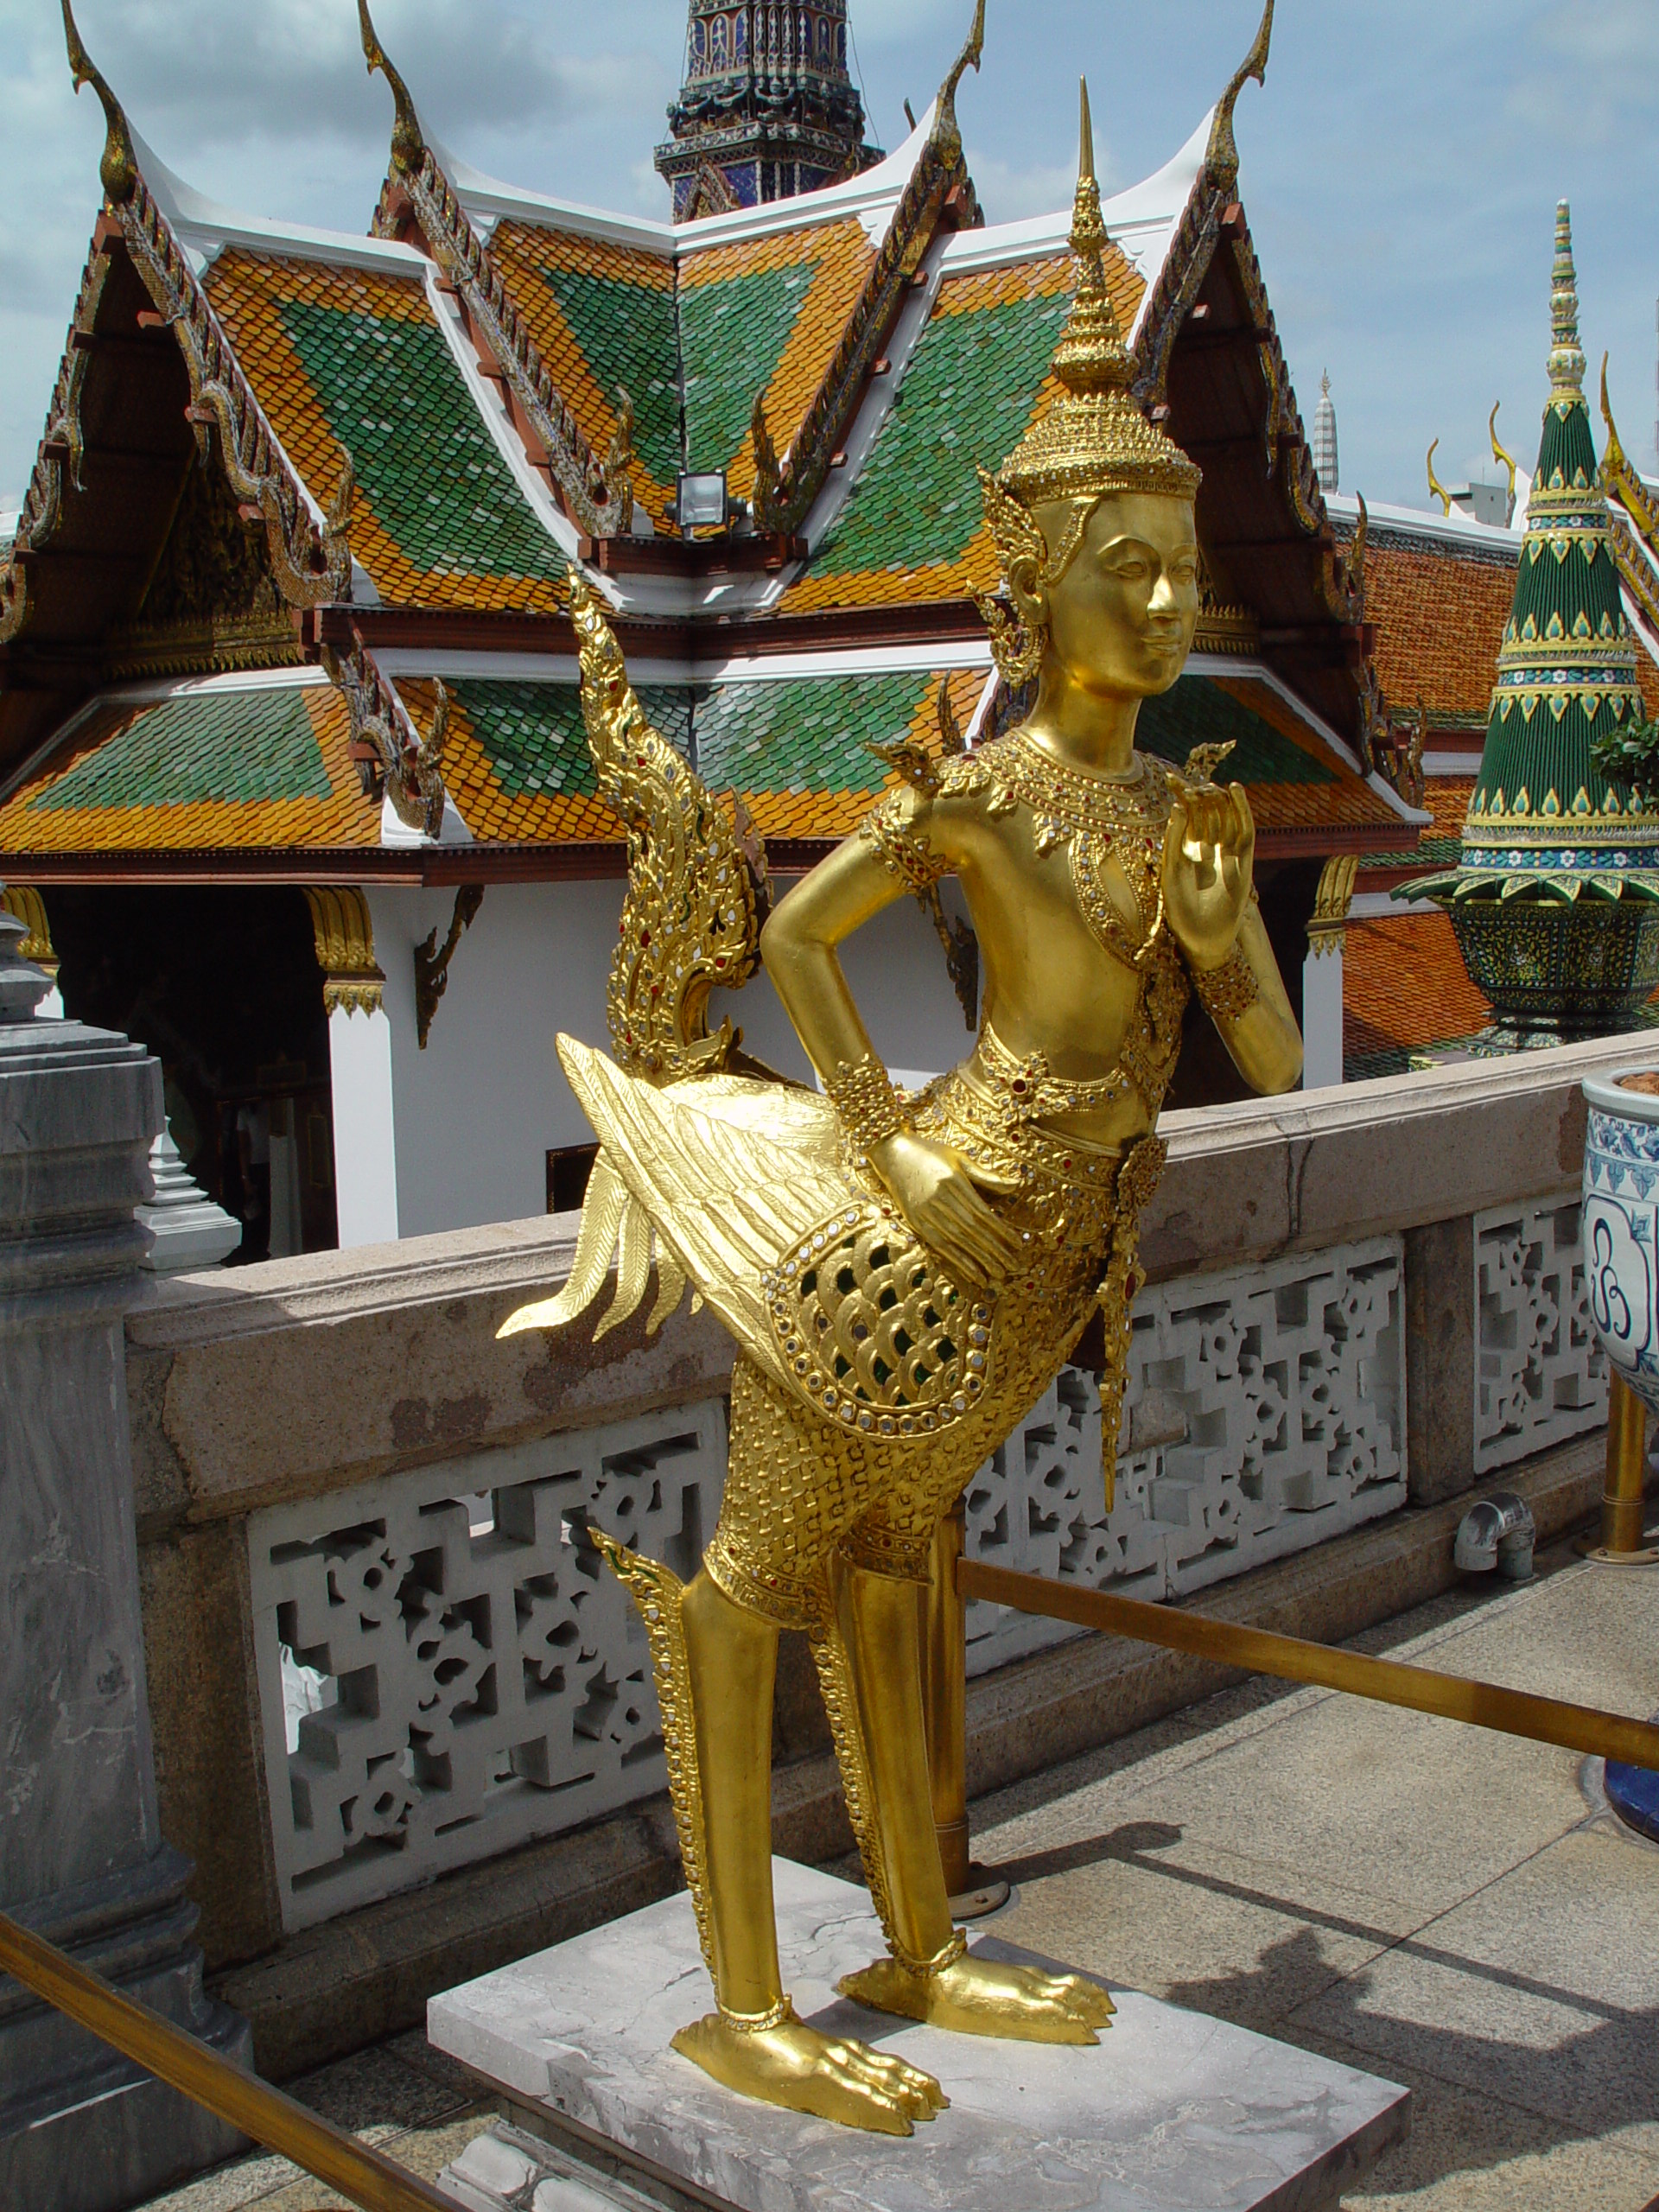 Kinnon Wat Phra Kaew